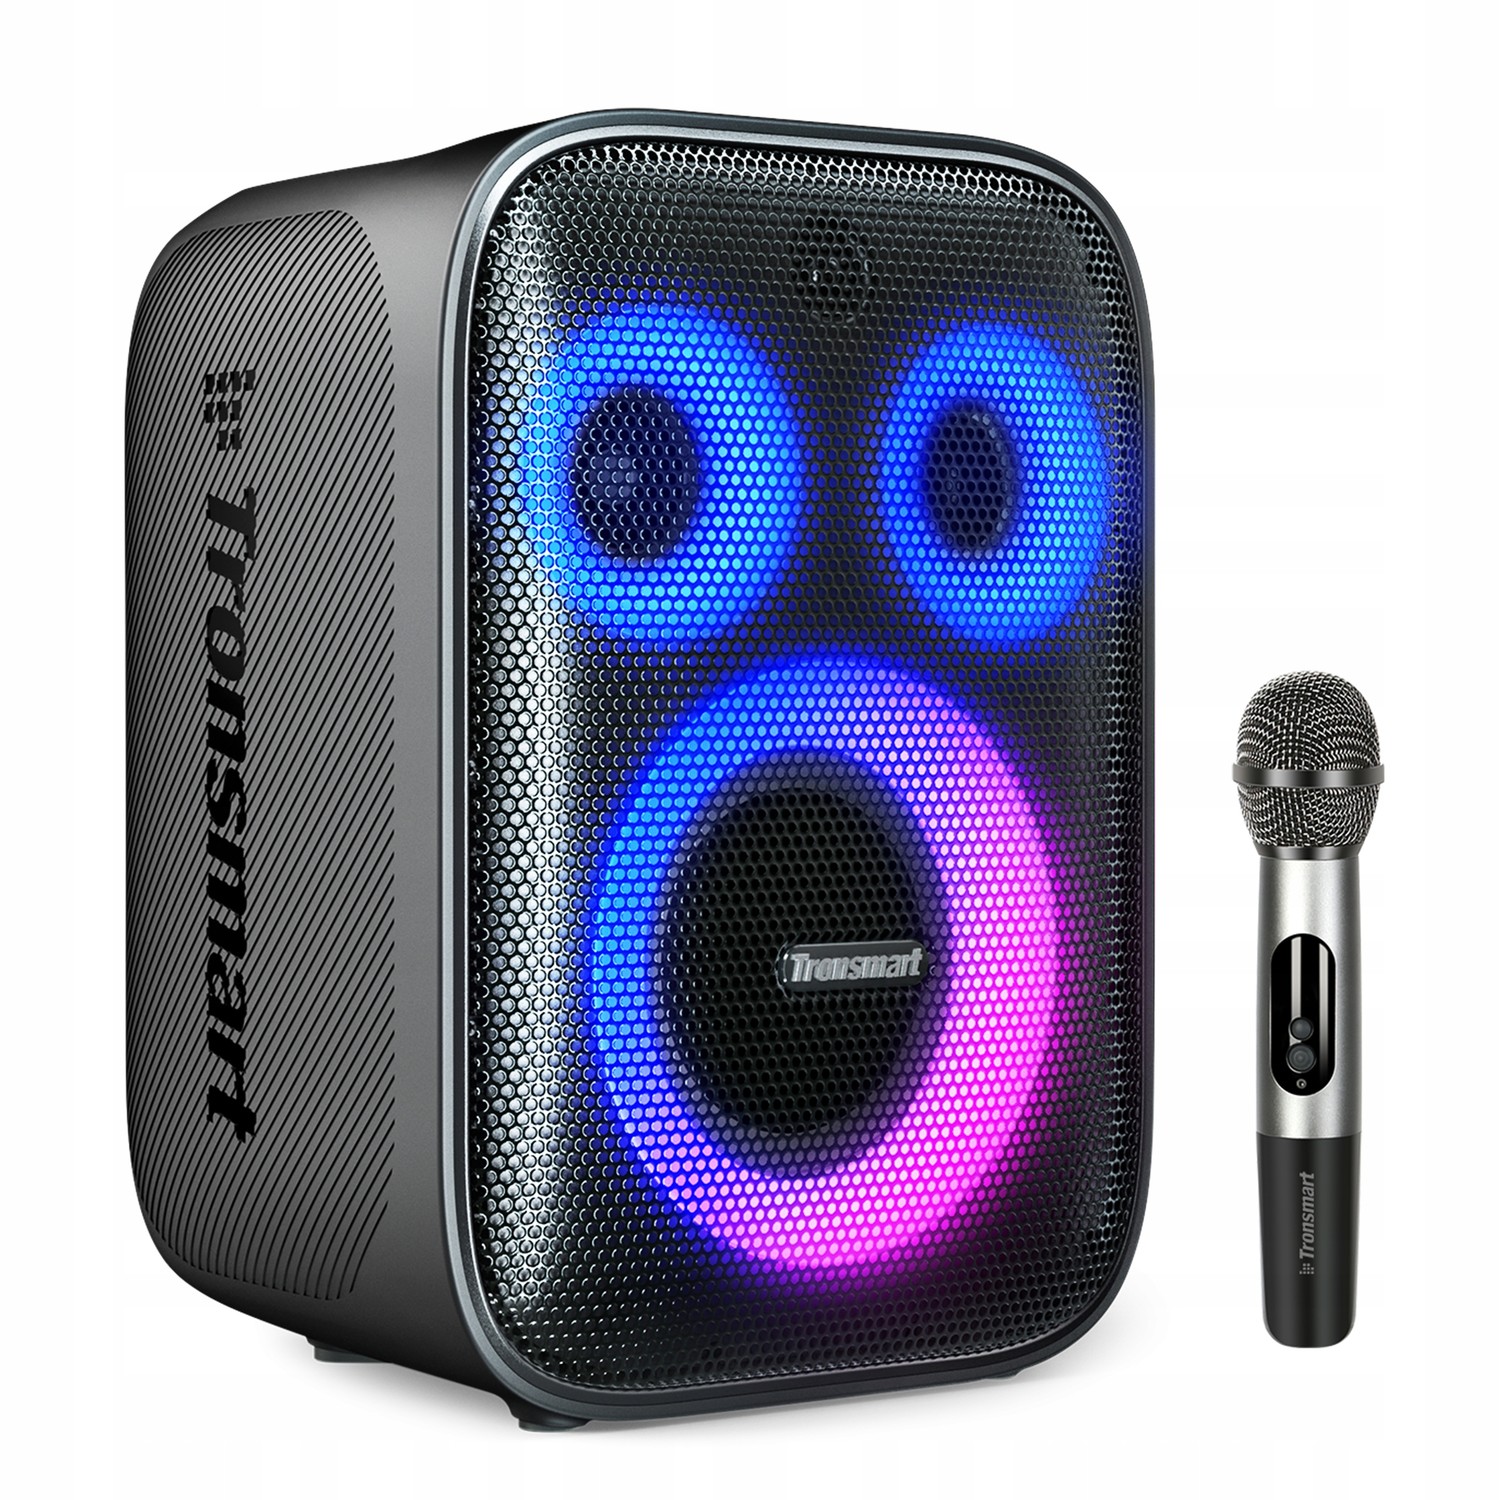 Karaoke Sprzęt Audio Dla Domu Bluetooth Głośnik BT5.3 Tronsmart Halo 200